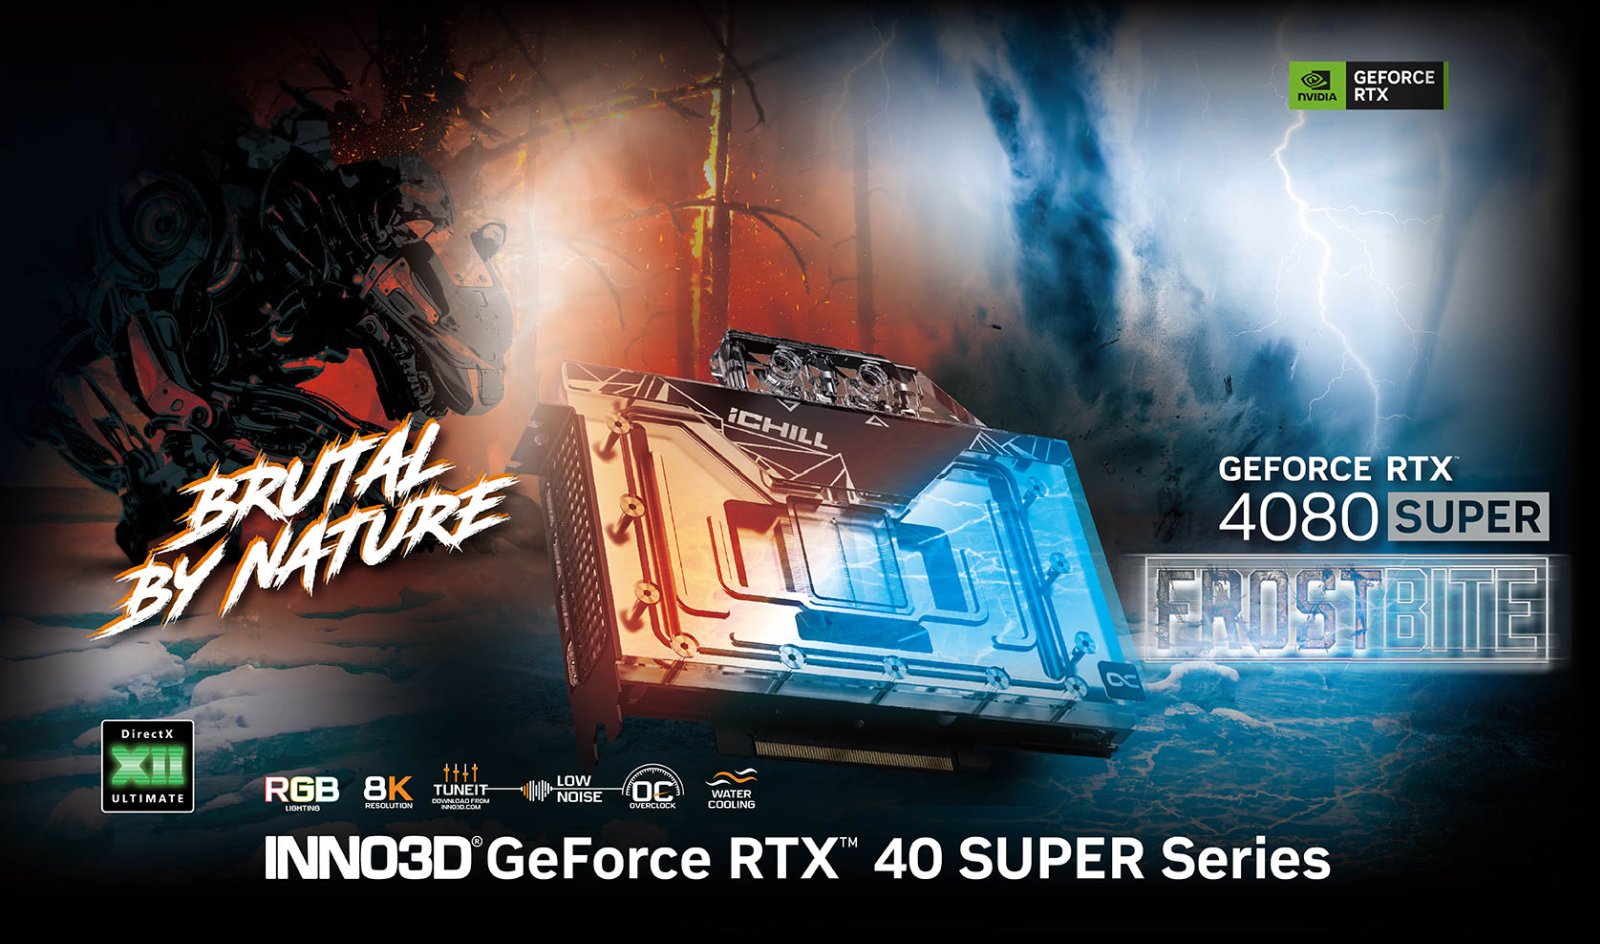 INNO3D GeForce RTX 4080 SUPER